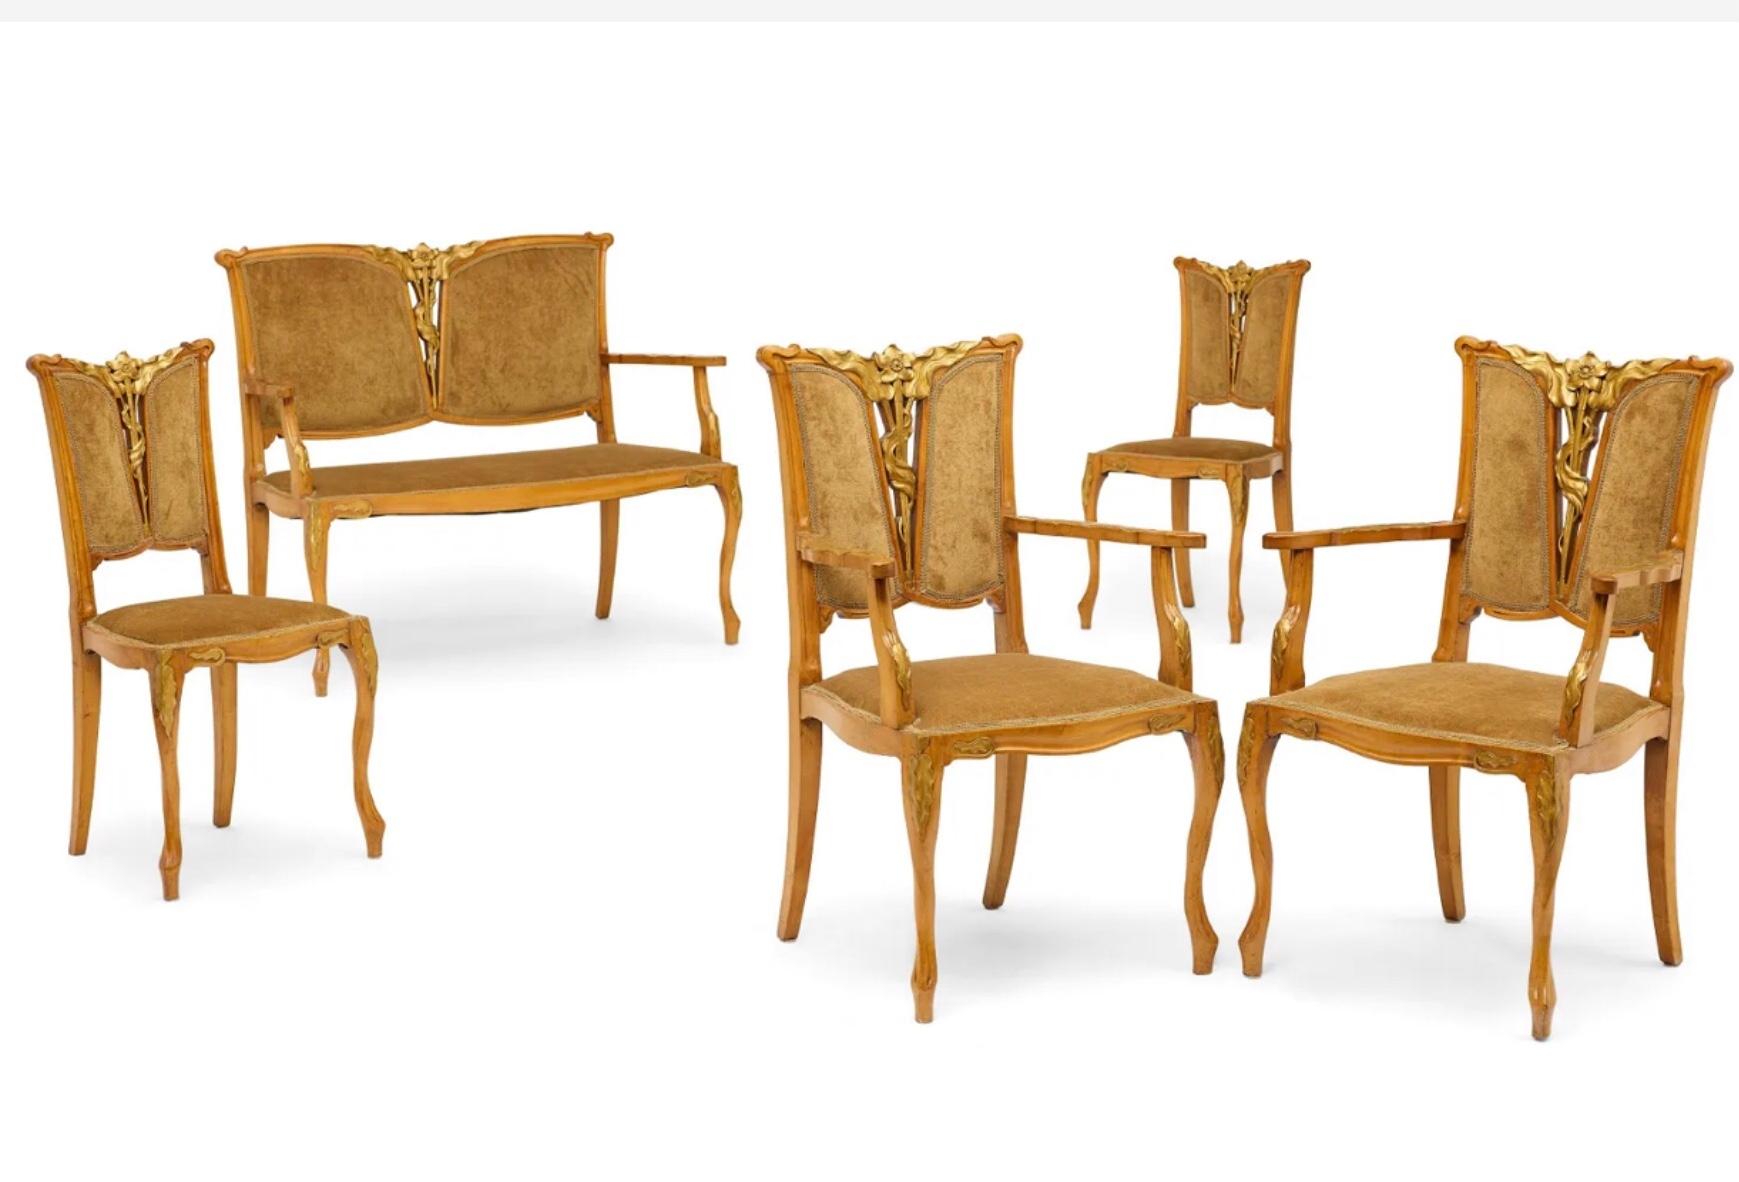 GEORGES DE FEURE (1868-1943), 
Fünfteilige Salon-Suite
um 1900

Nussbaum und paketvergoldet, bestehend aus einer Couch, zwei Sesseln und zwei Beistellstühlen. Es ist selten, ein komplettes Set von Jugendstilmöbeln zu finden, und der Stil von